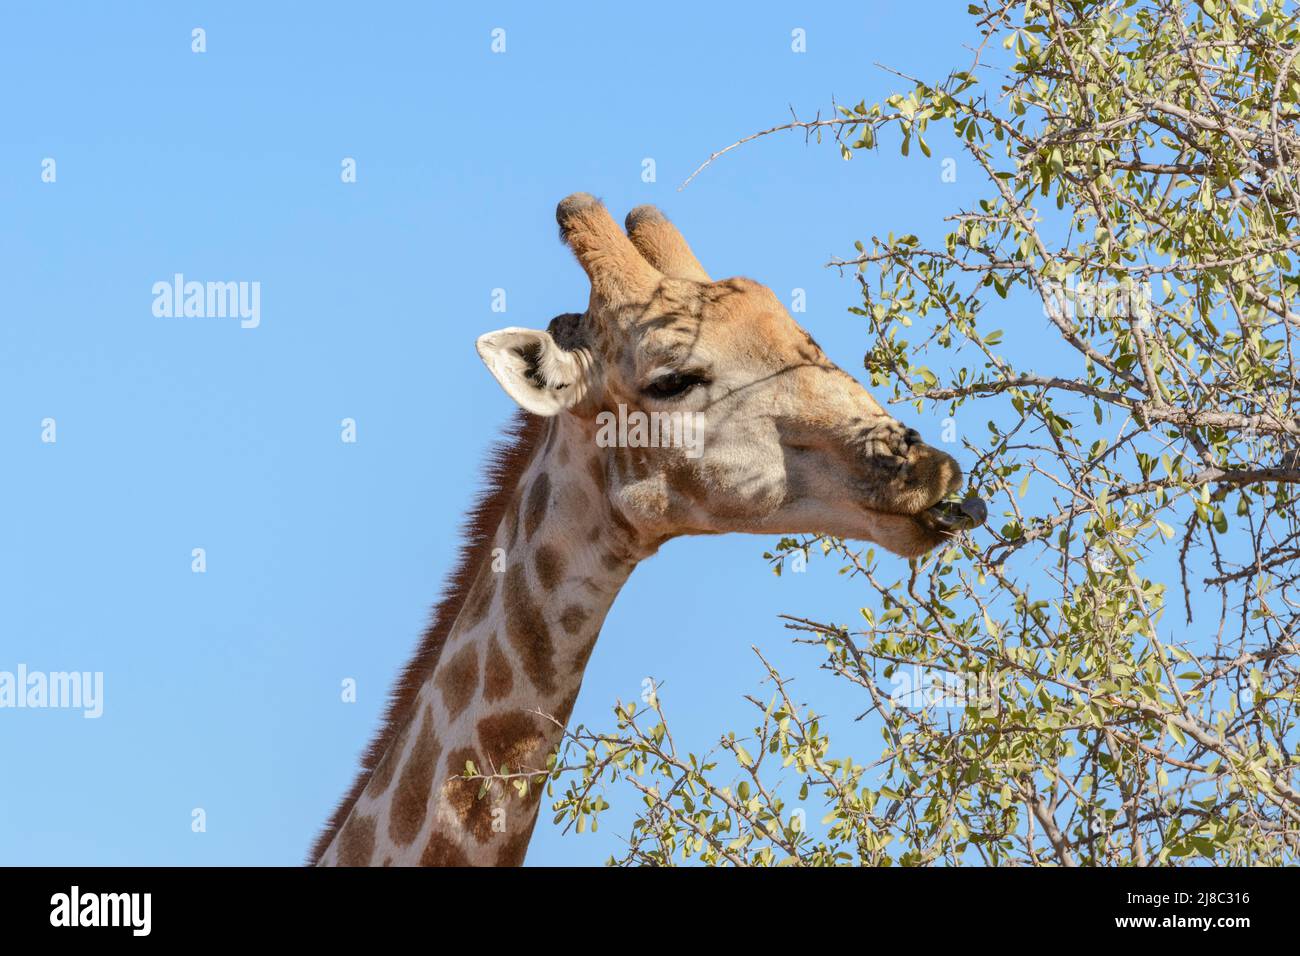 Girafe angolaise (Giraffa camelopardalis angolensis ou Giraffa giraffa angolensis), également connue sous le nom de girafe namibienne, Namibie, Afrique du Sud-Ouest Banque D'Images